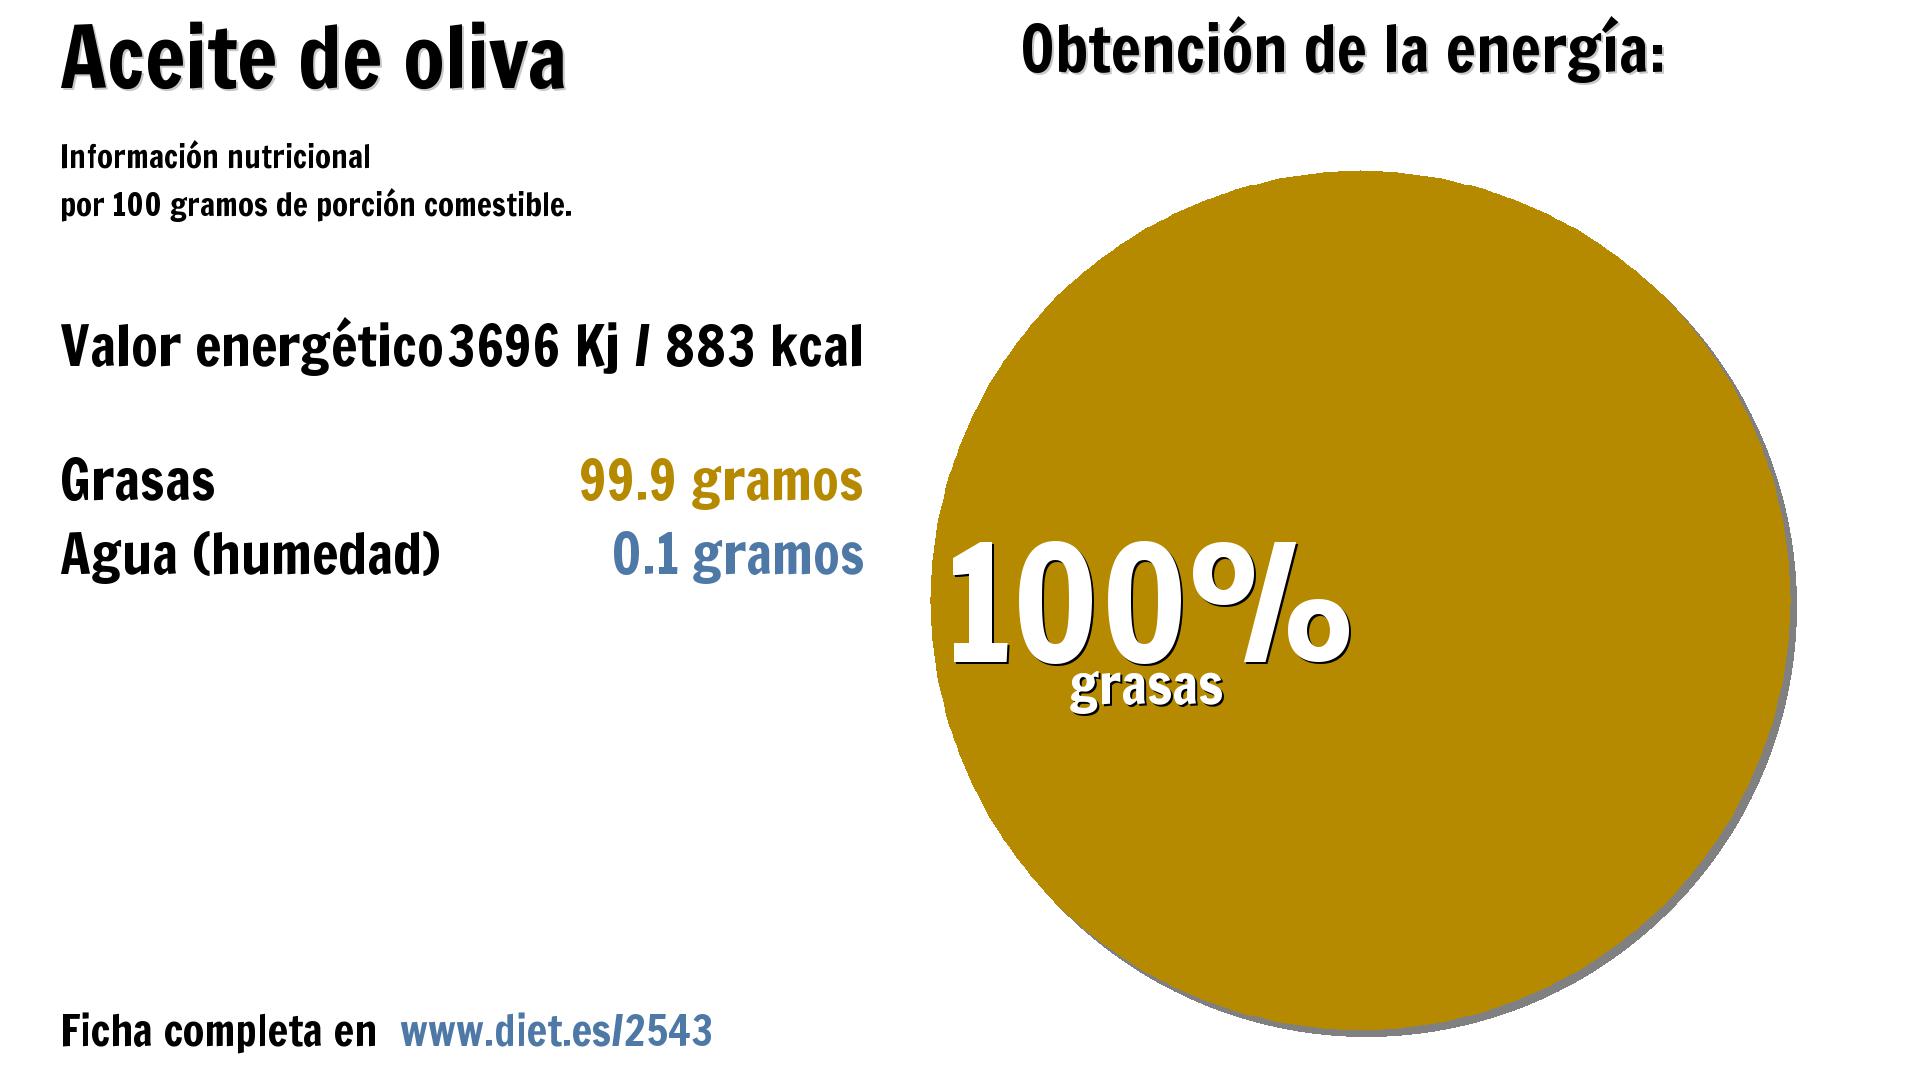 Aceite de oliva: energía 3696 Kj y grasas 100 g.